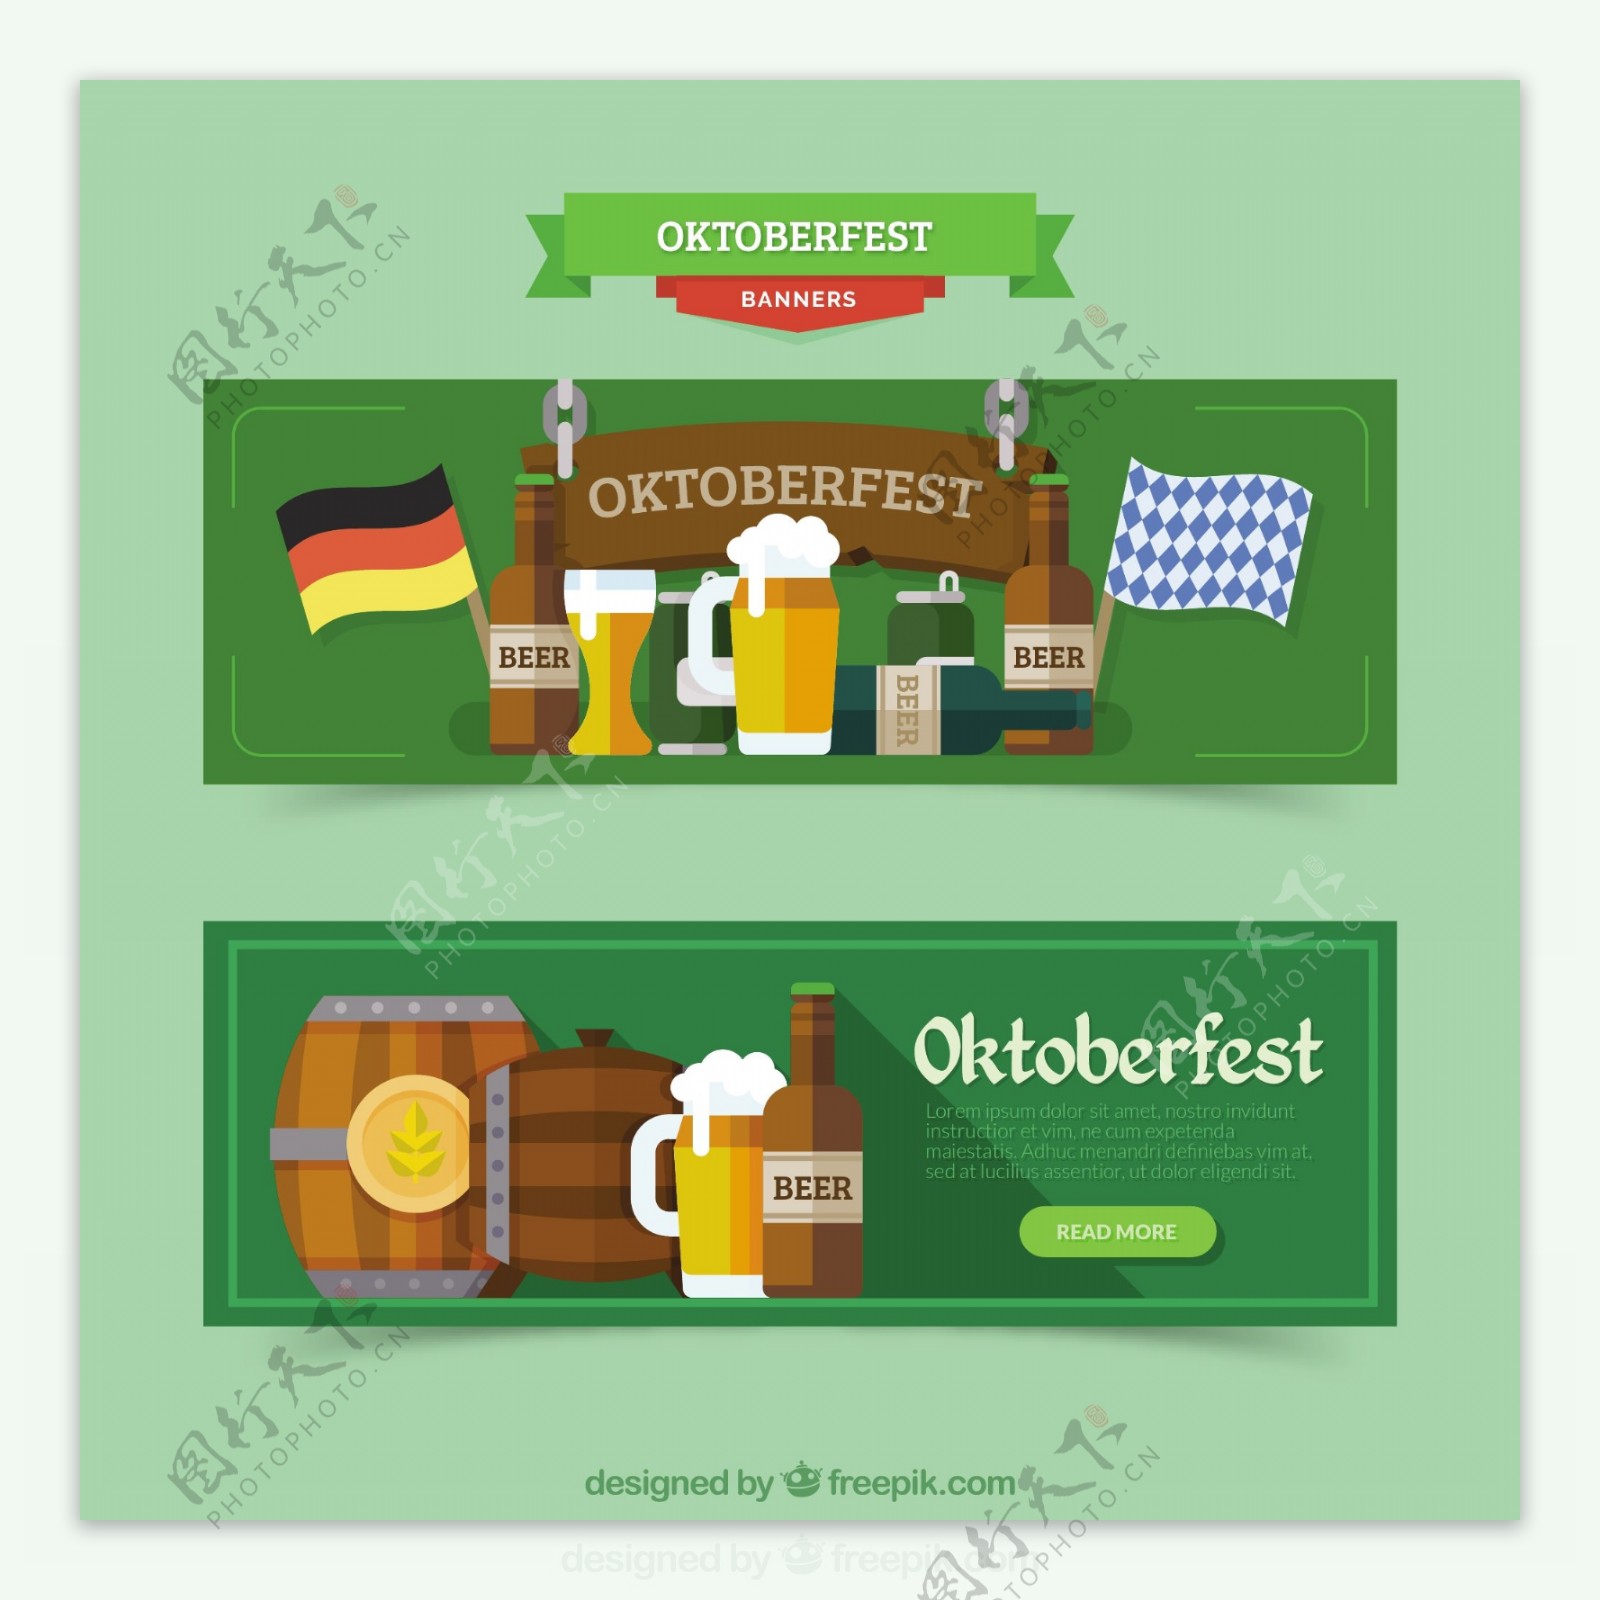 随着啤酒节的德国产品的旗帜